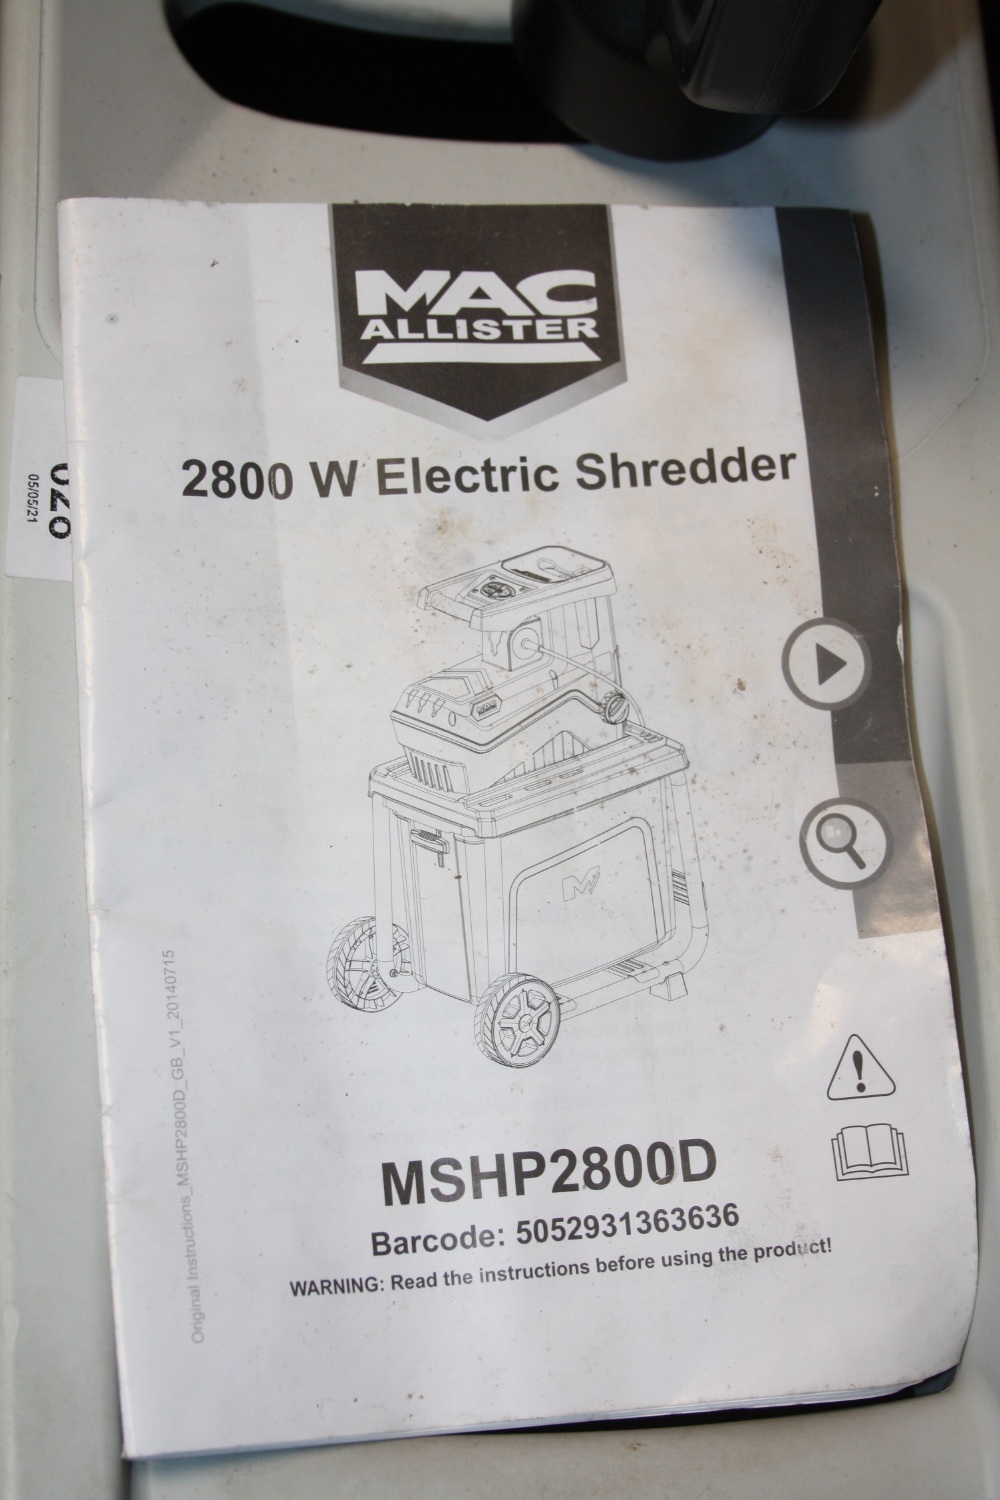 A MACALLISTER 2800 W GARDEN SHREDDER - MSHP2800D - Image 2 of 2